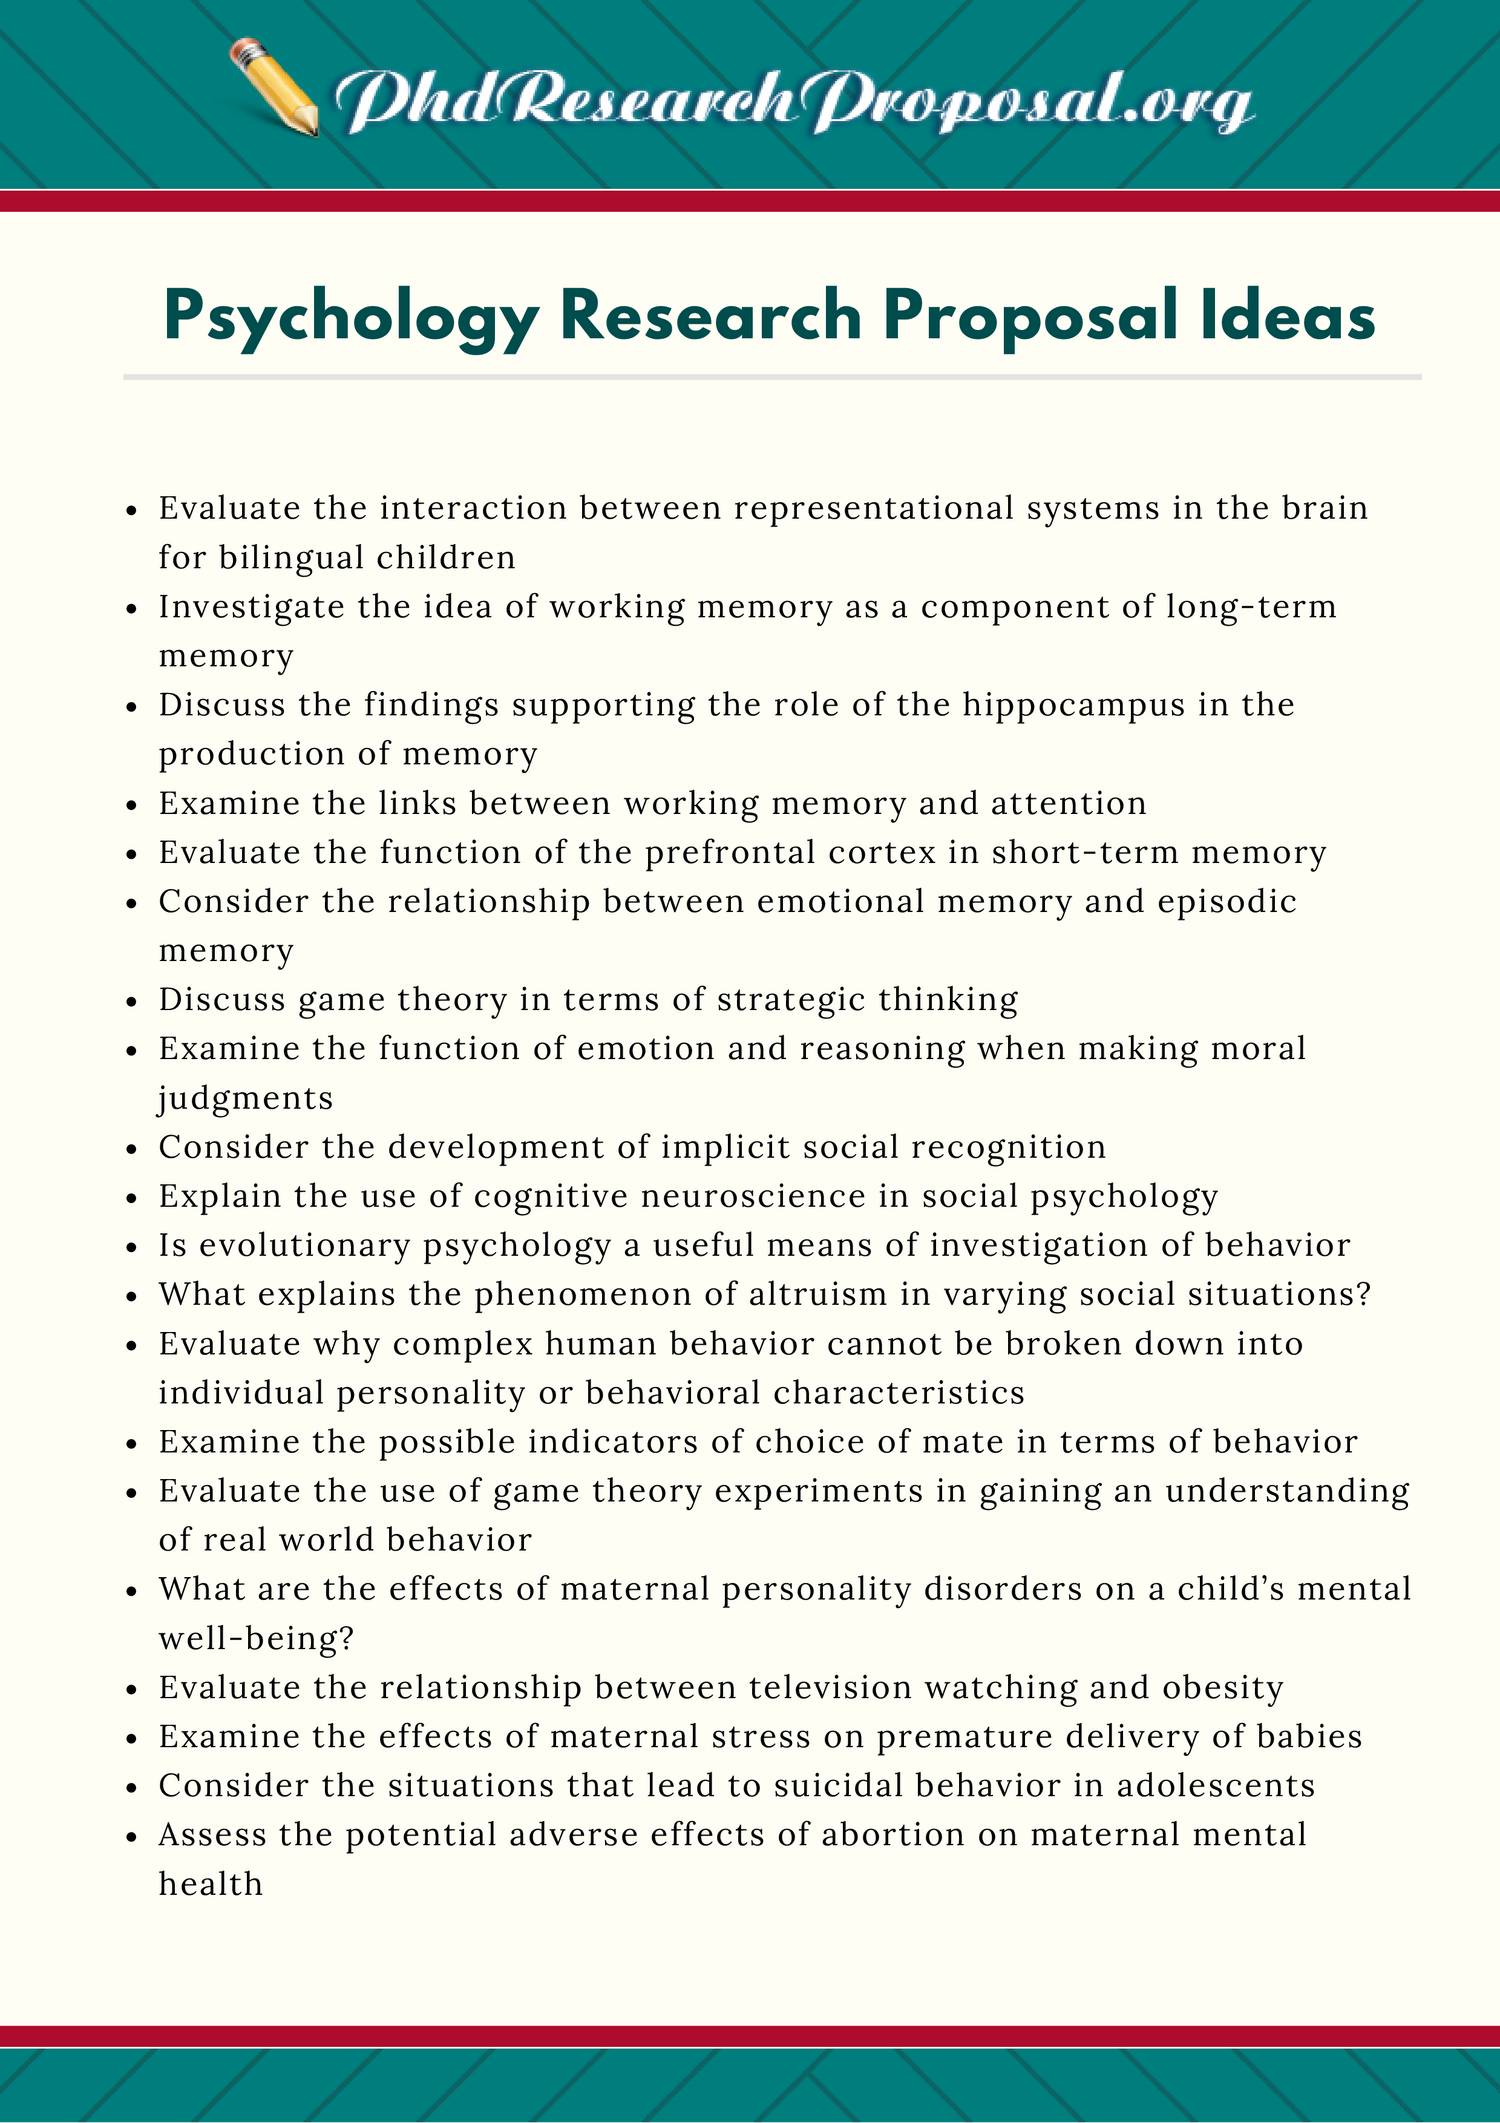 mock research proposal psychology